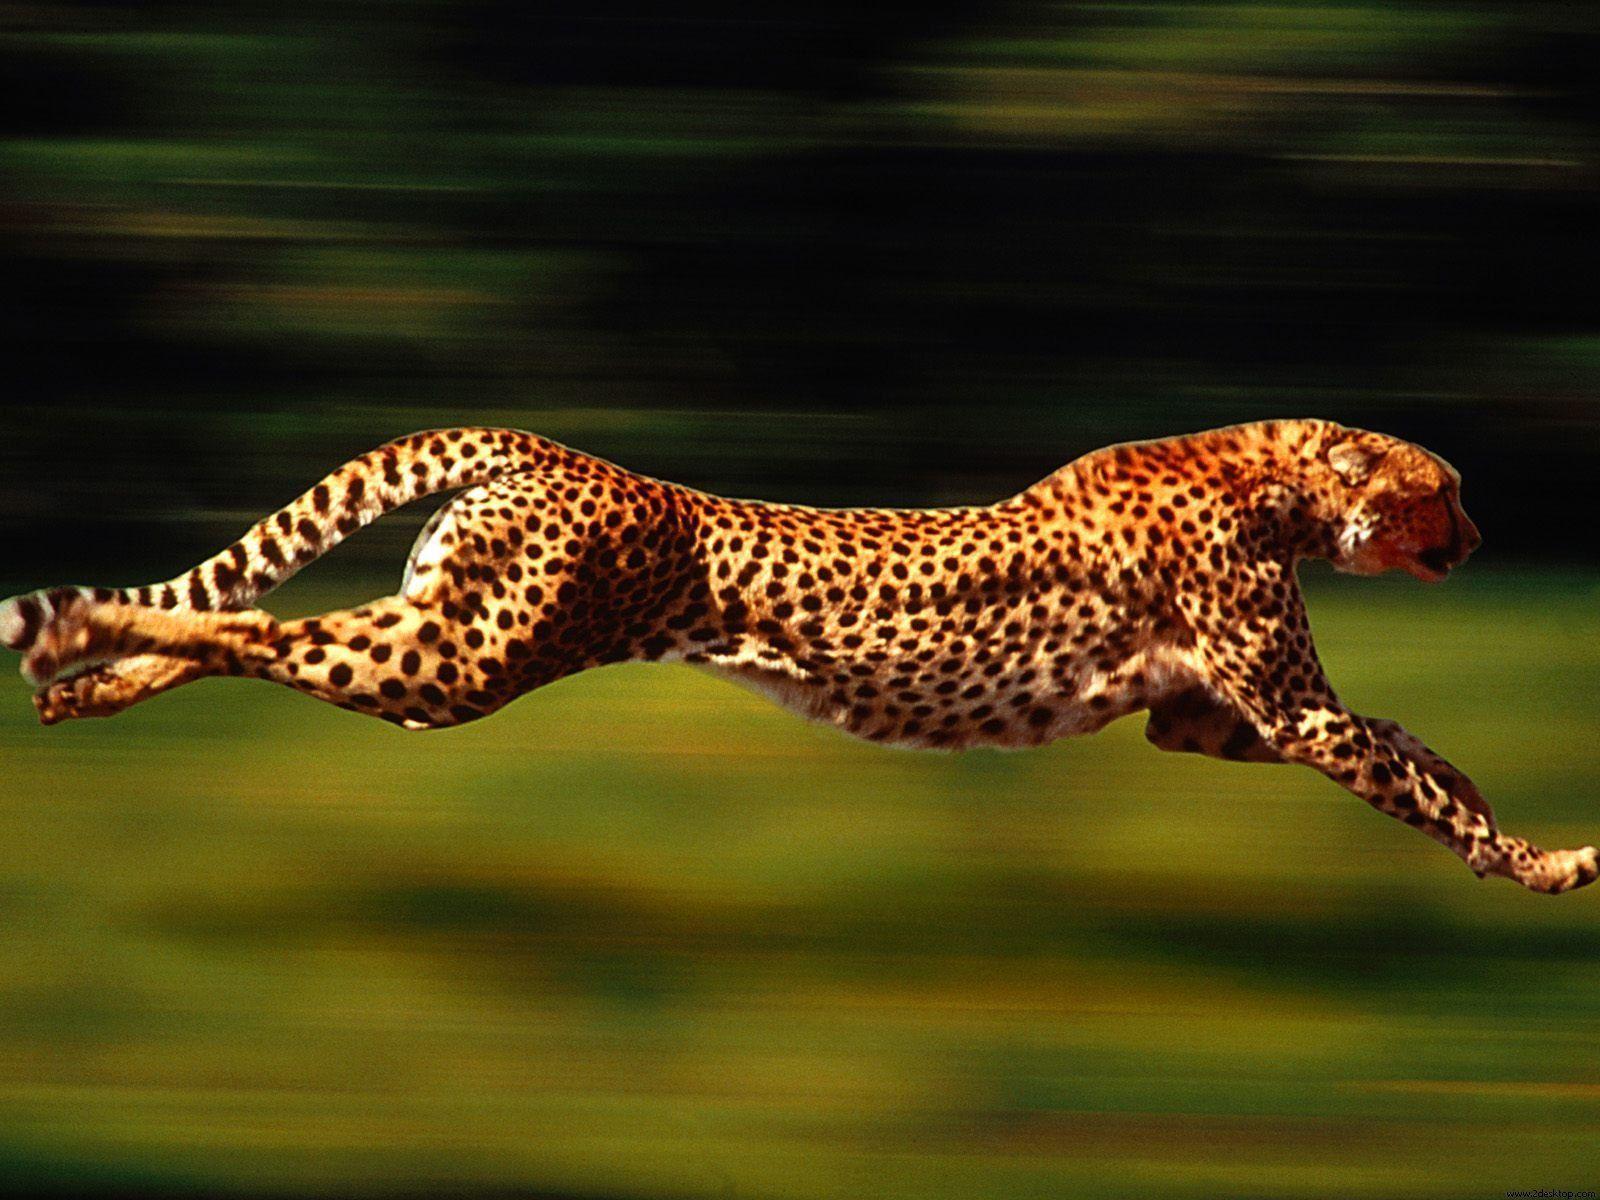 Running Cheetah Wallpaper